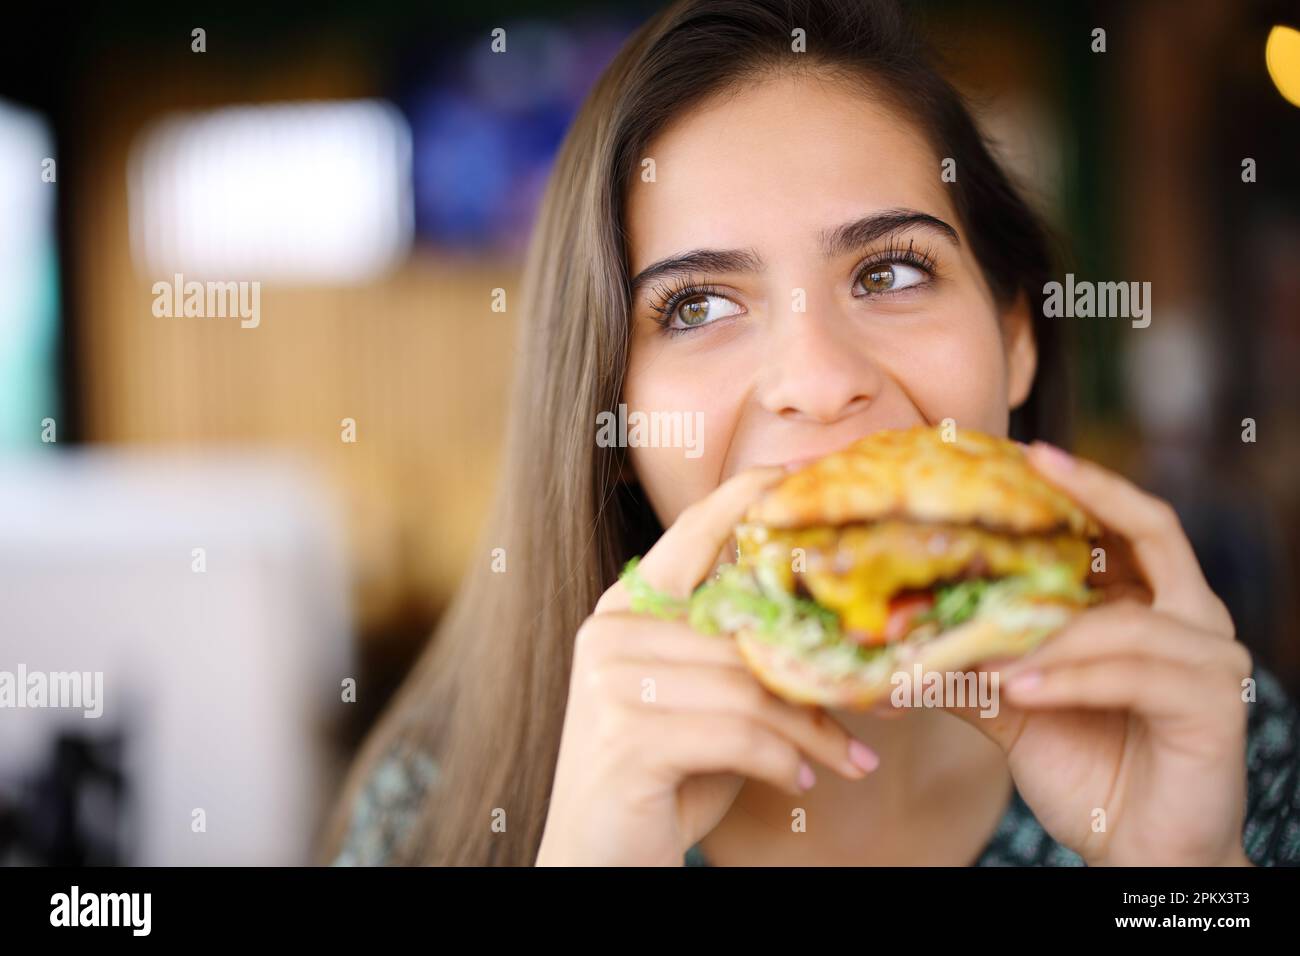 Vue de face d'une femme heureuse mangeant un gros hamburger dans un restaurant Banque D'Images